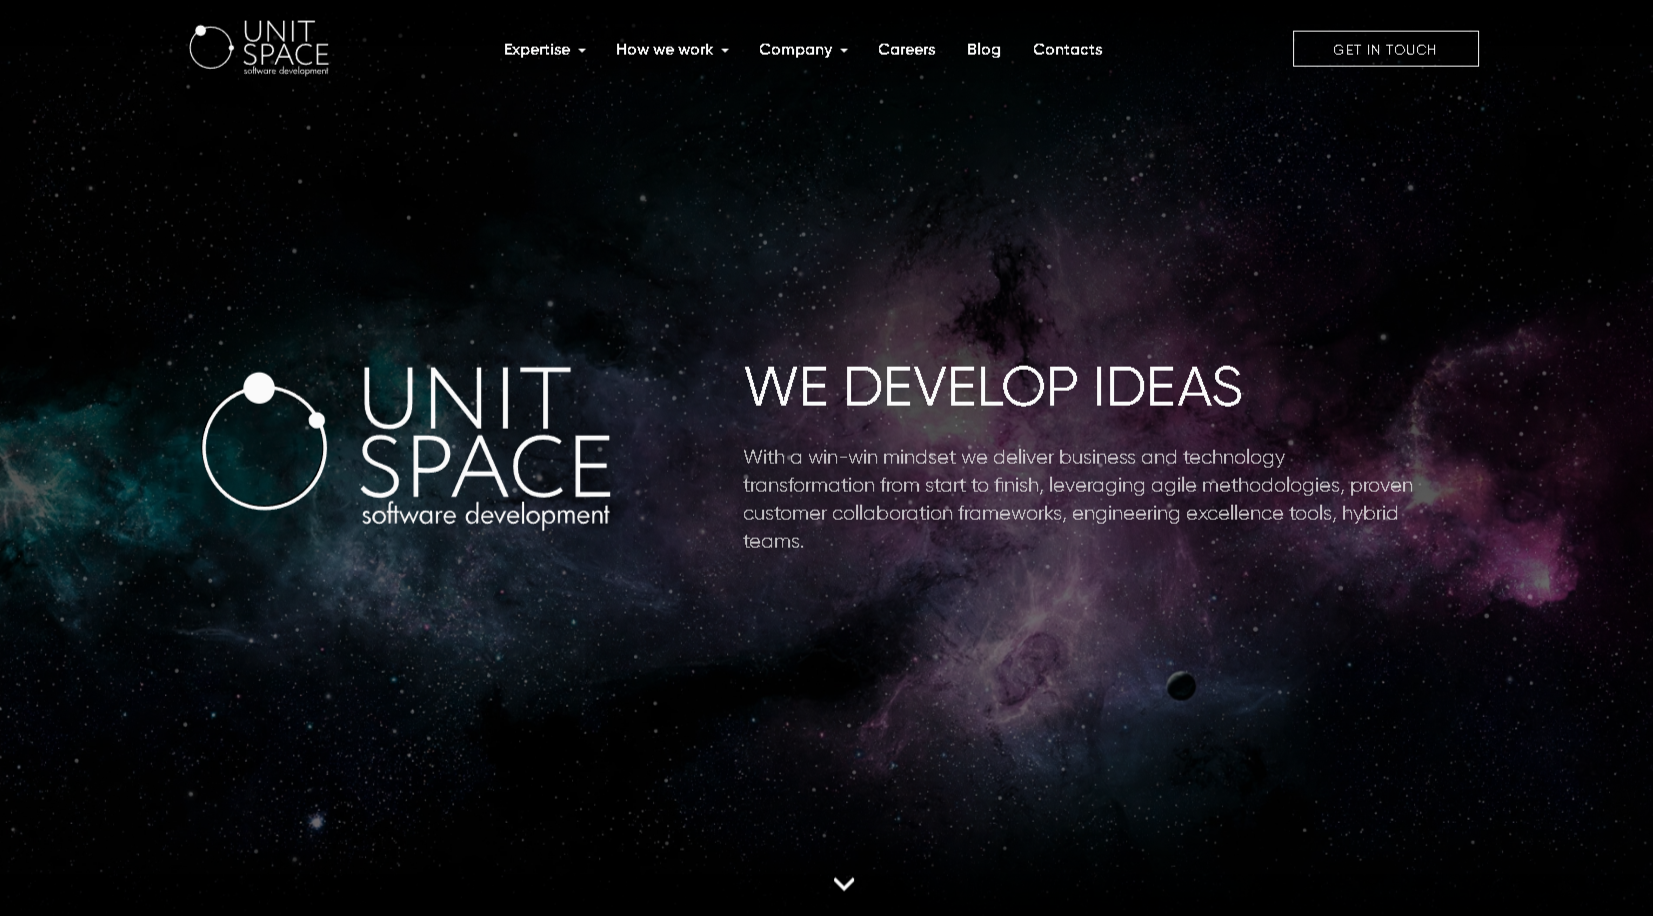 Unit Space